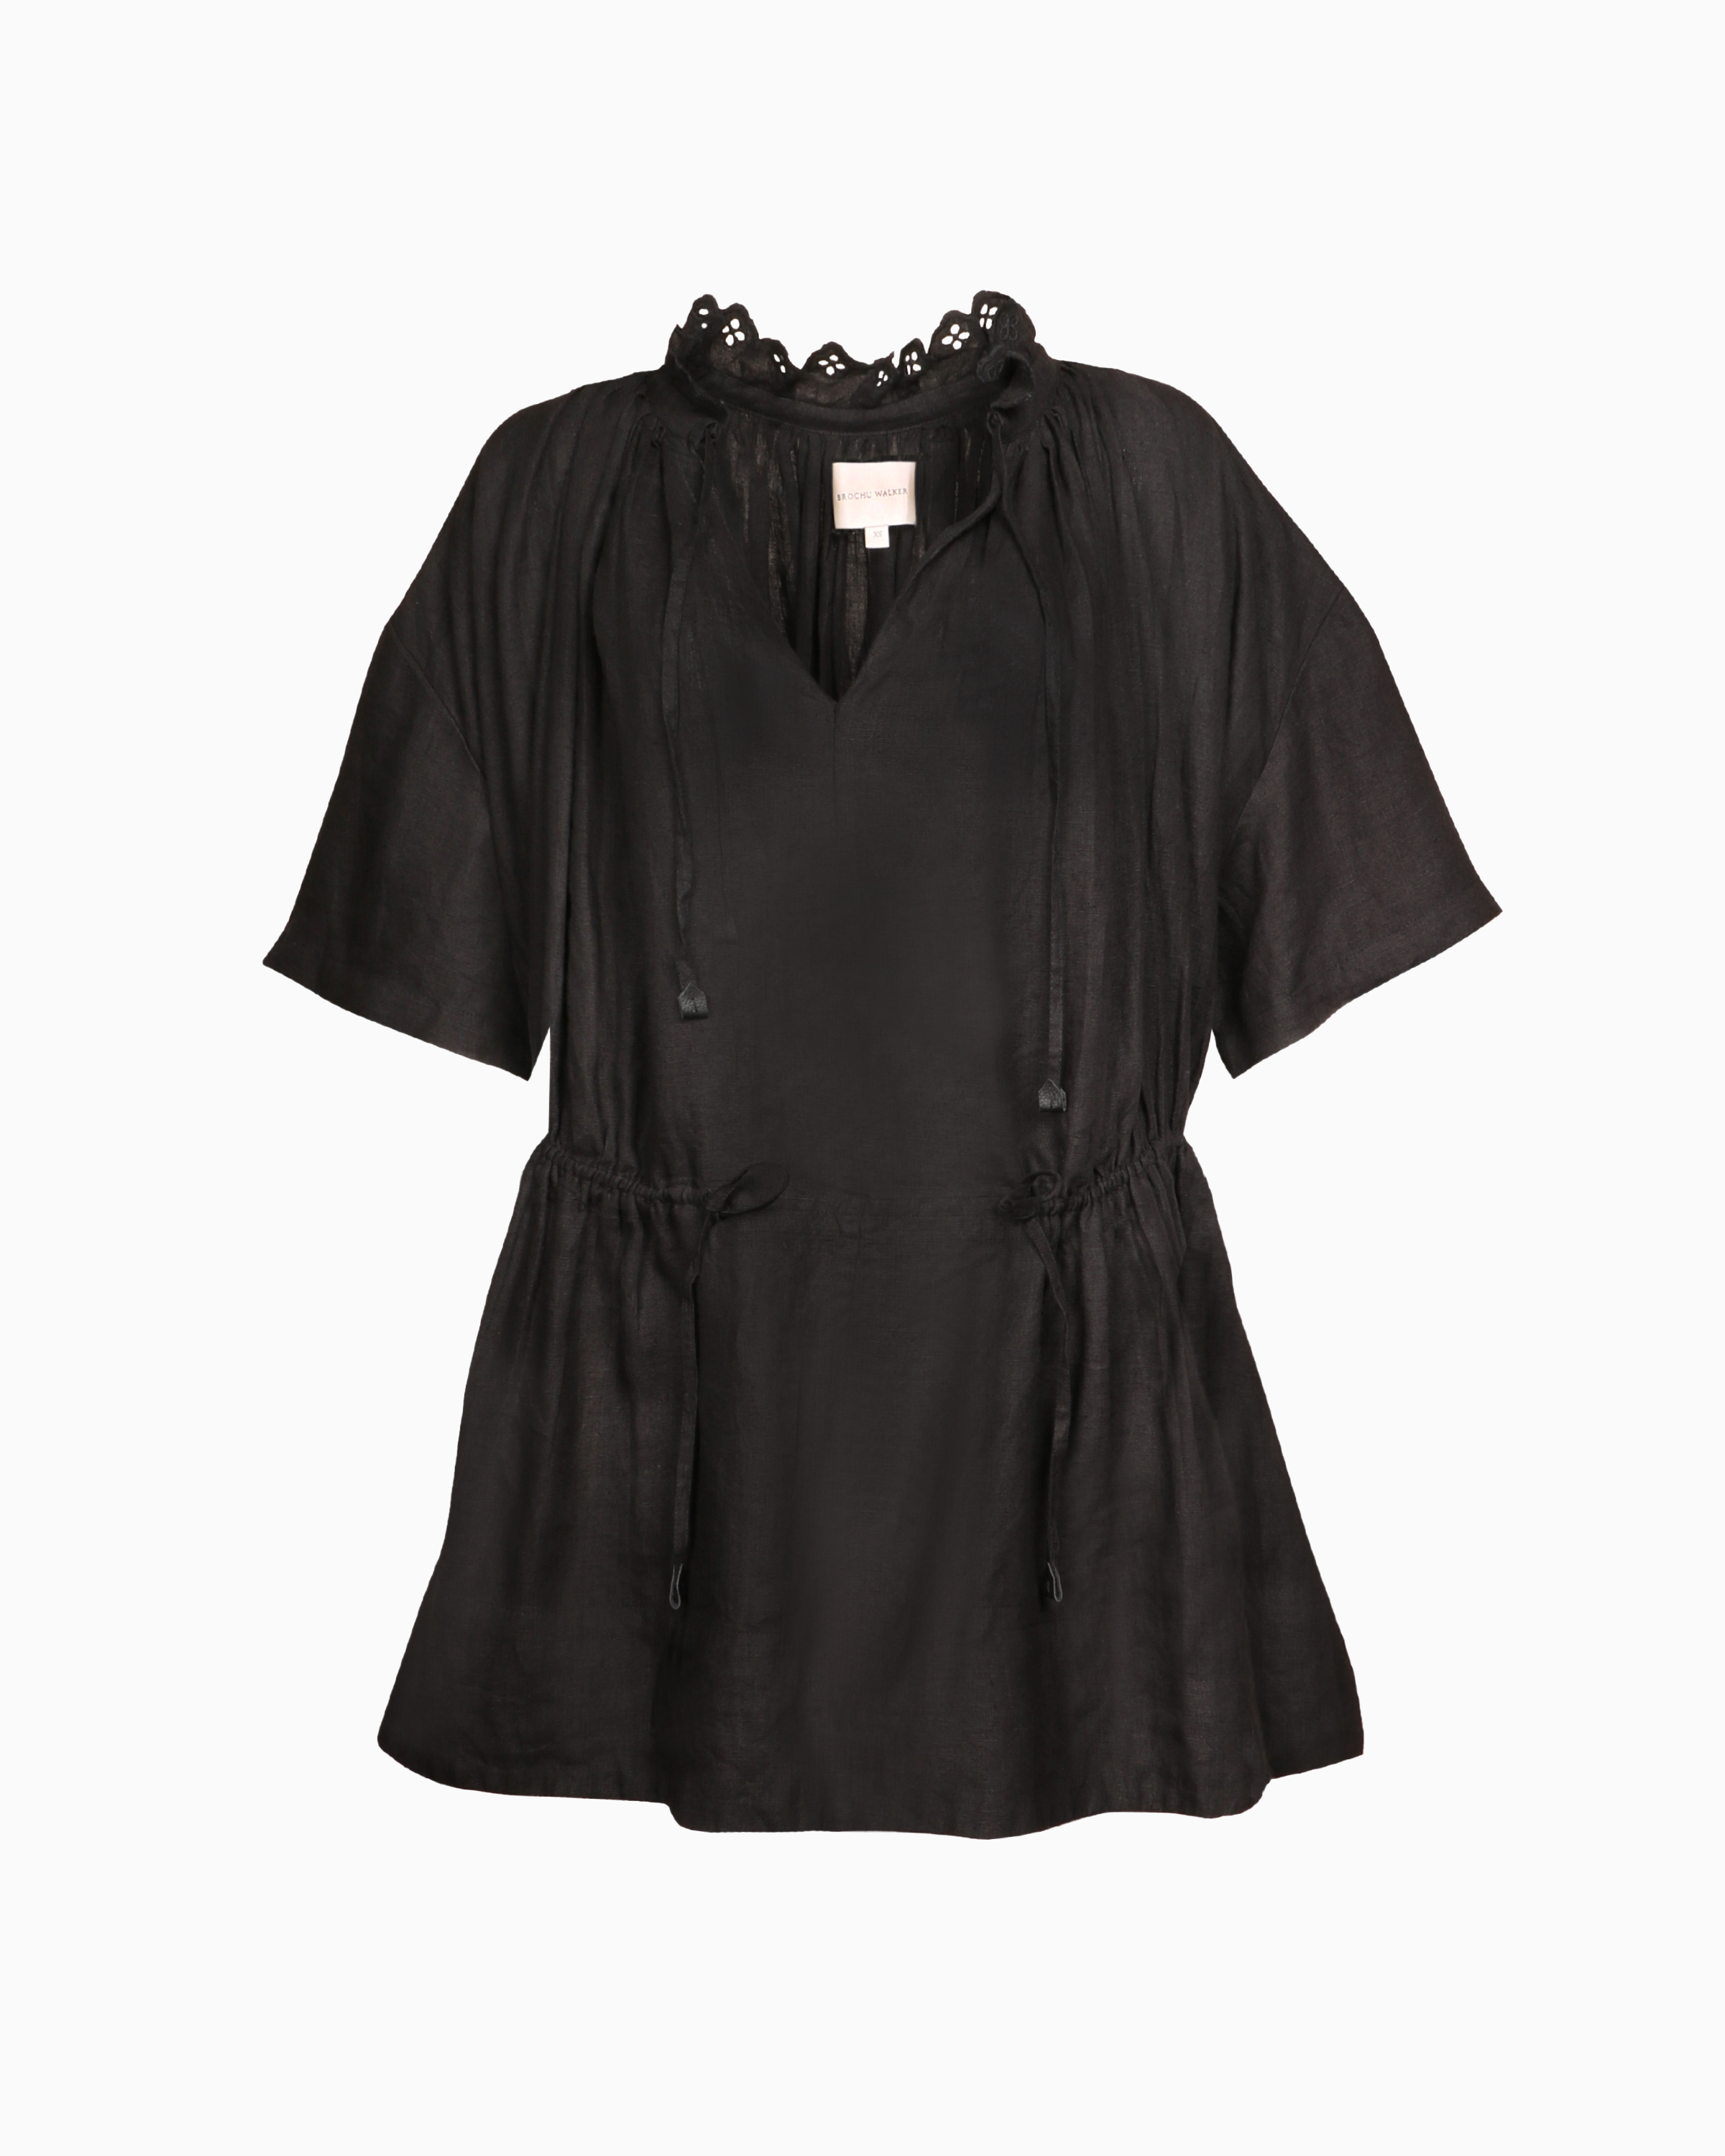 Brochu Walker St. Tropez Dress in Black Onyx